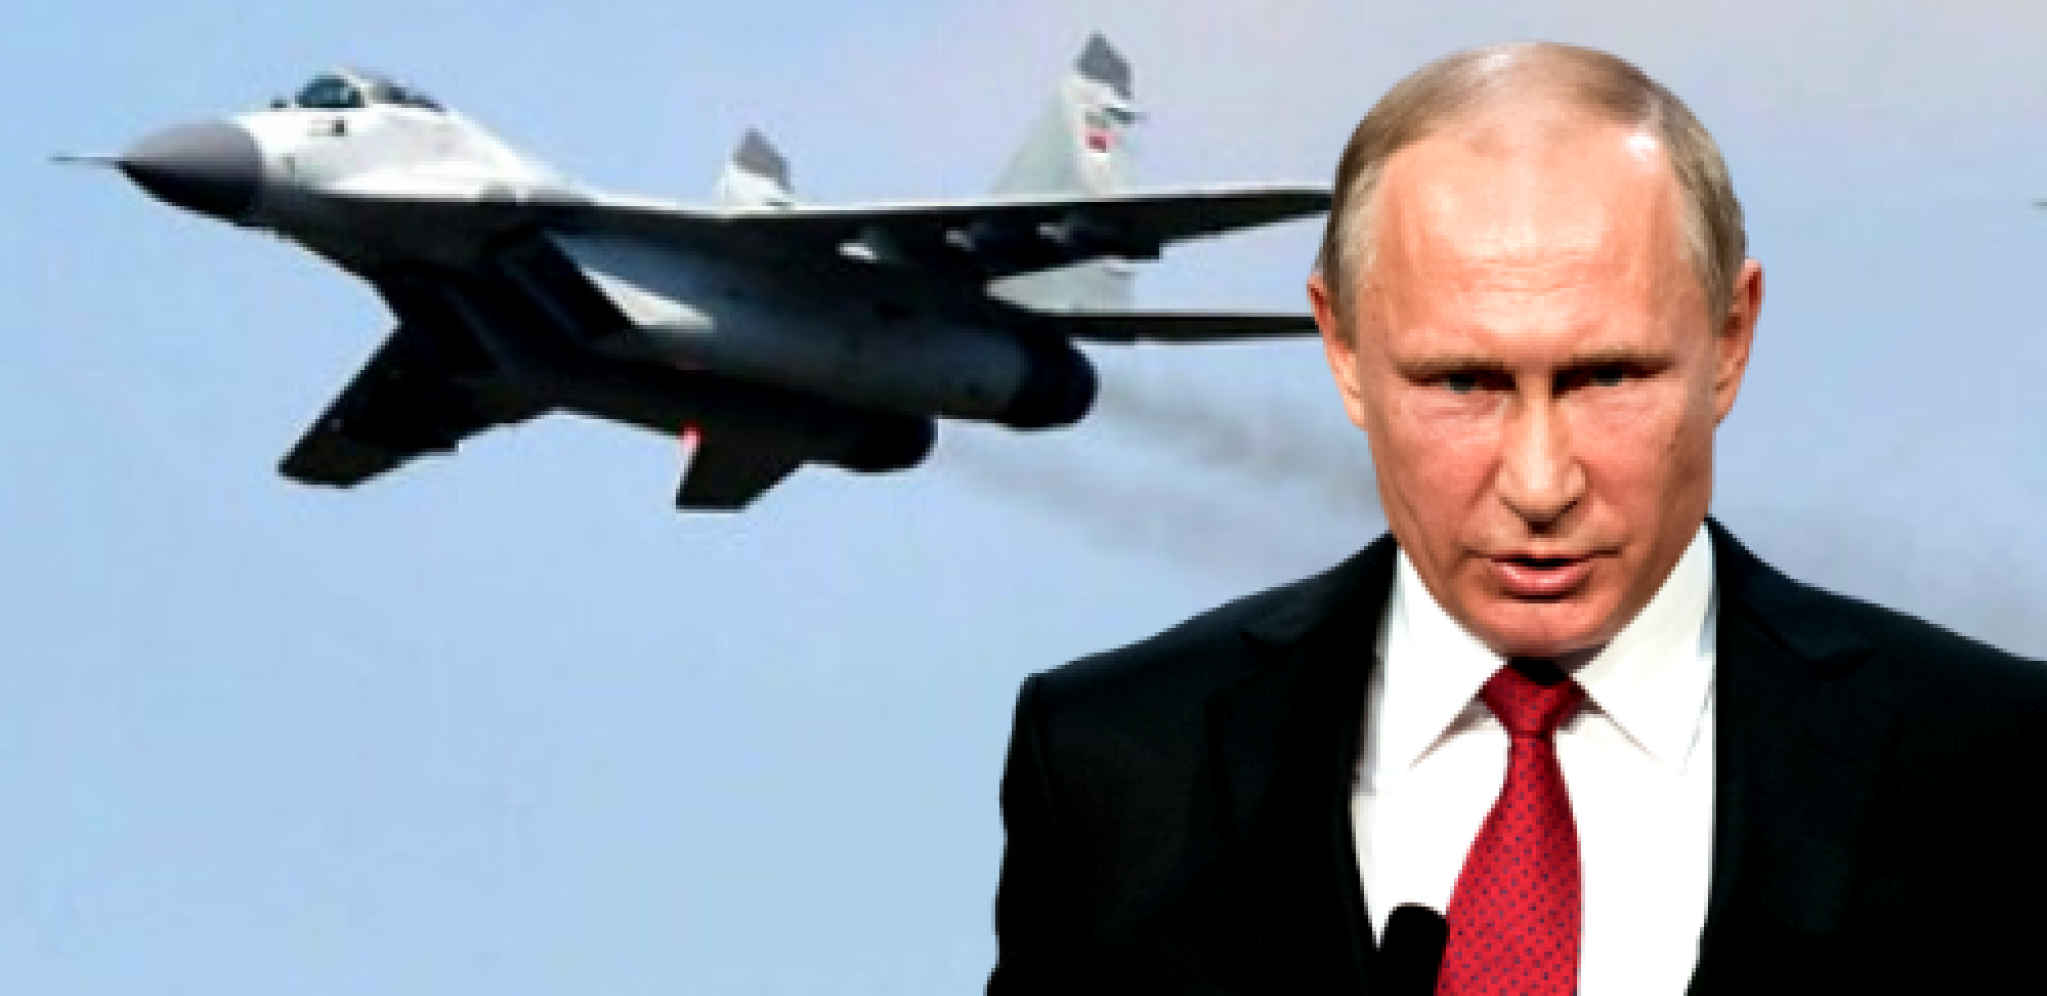 TAJNI DOKUMENTI UGLEDALI SVETLOST DANA Putin usmerava sve snage ka samo jednom cilju